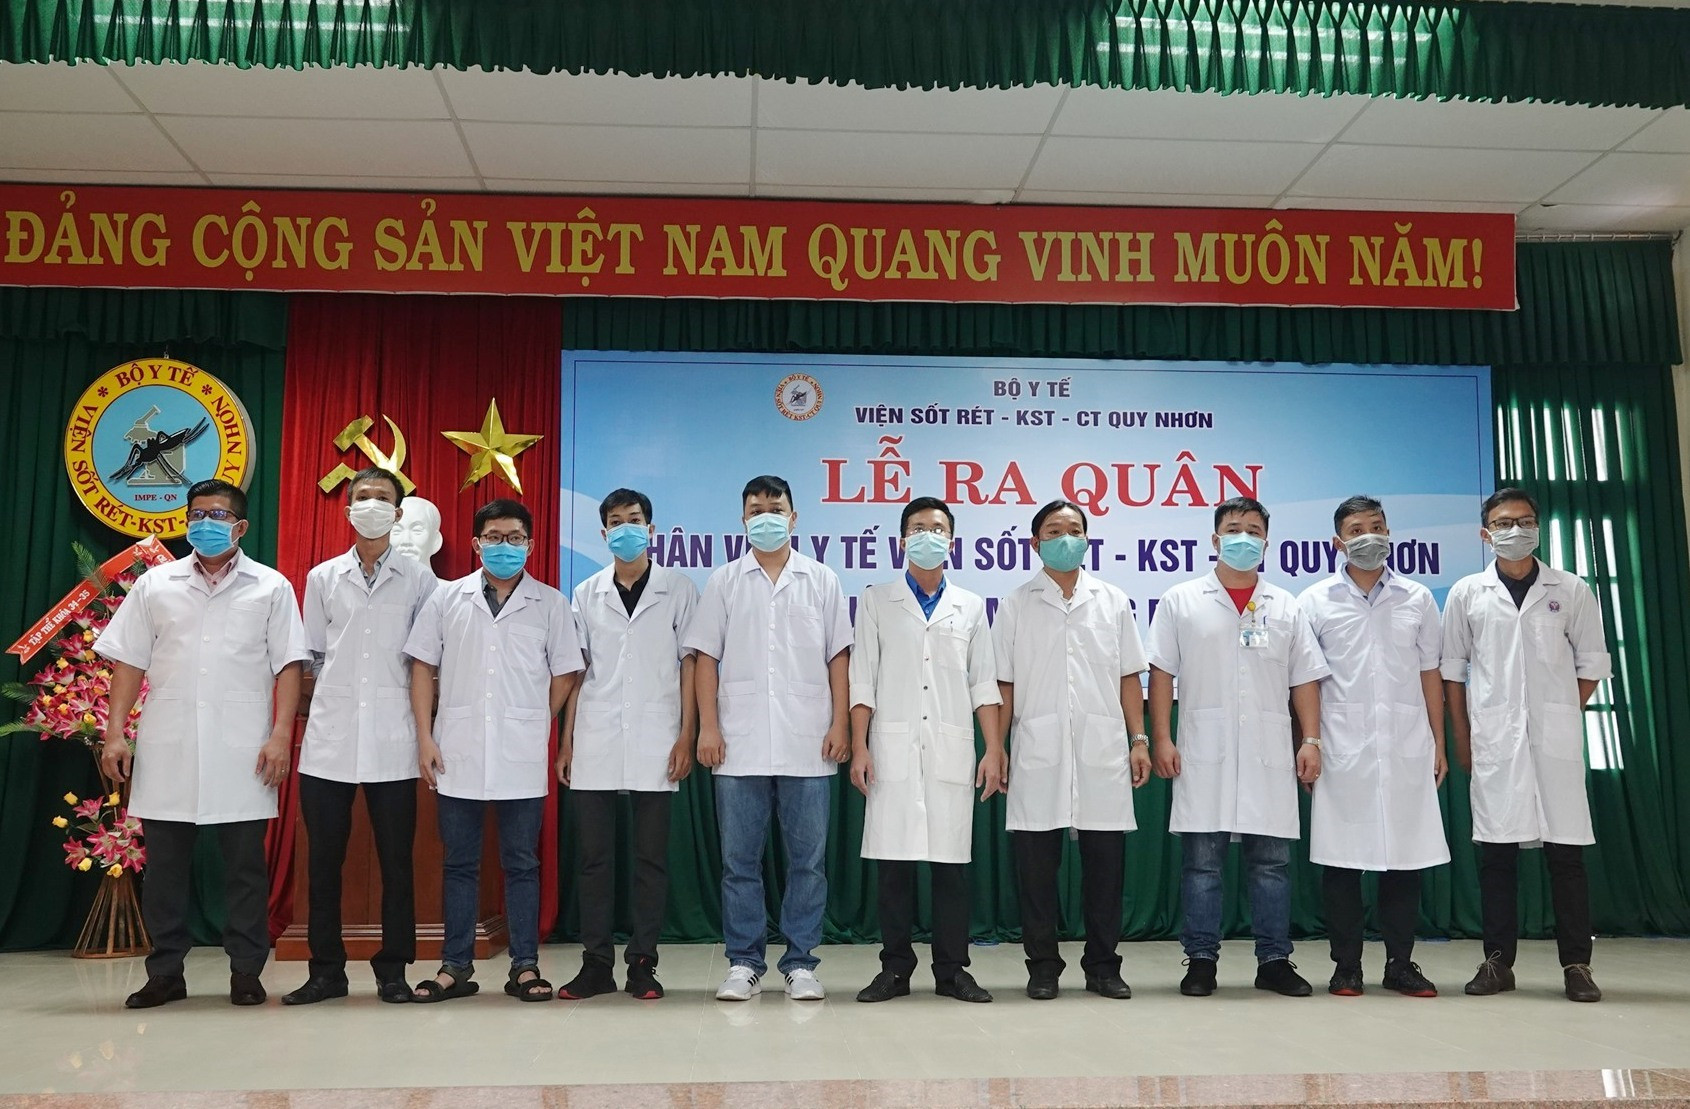 Nhiều đoàn công tác của các bệnh viện, cơ sở y tế cử lực lượng tăng cường cho Quảng Nam giúp nâng cao năng lực hoạt động trong phòng chống dịch Covid-19. Ảnh: H.T